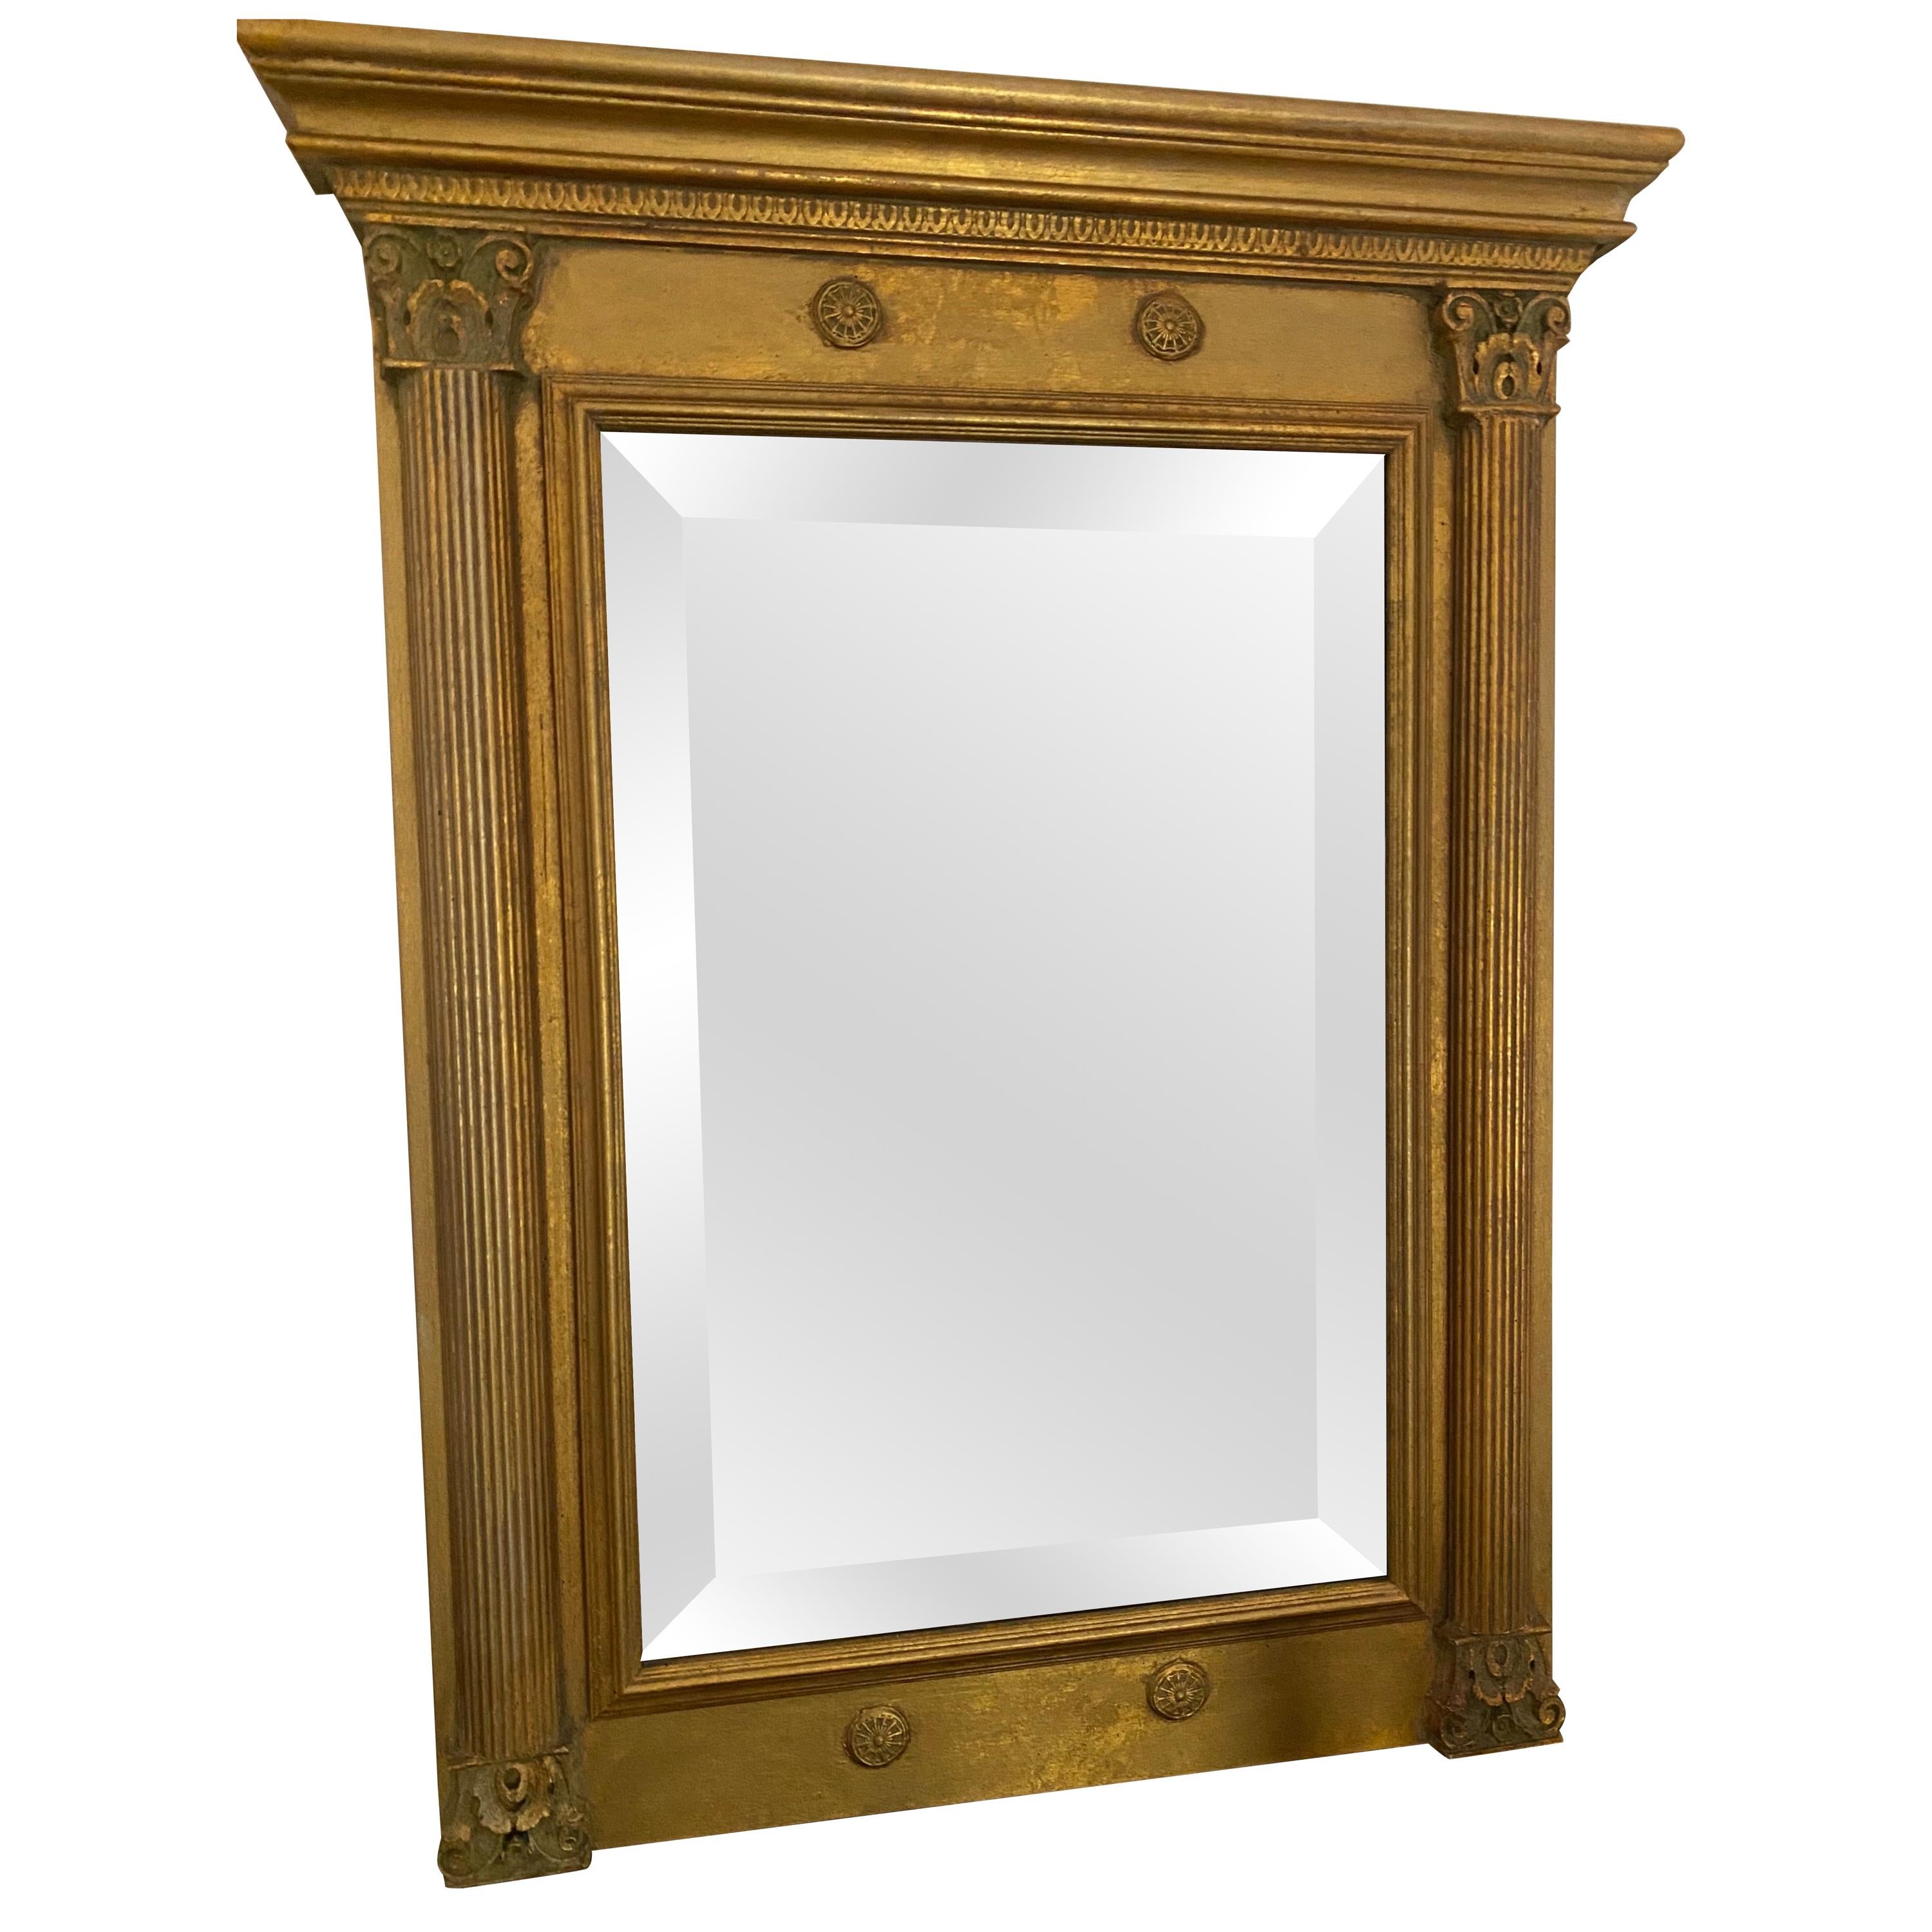 Spiegel im neoklassizistischen Revival-Stil mit vergoldetem Rahmen